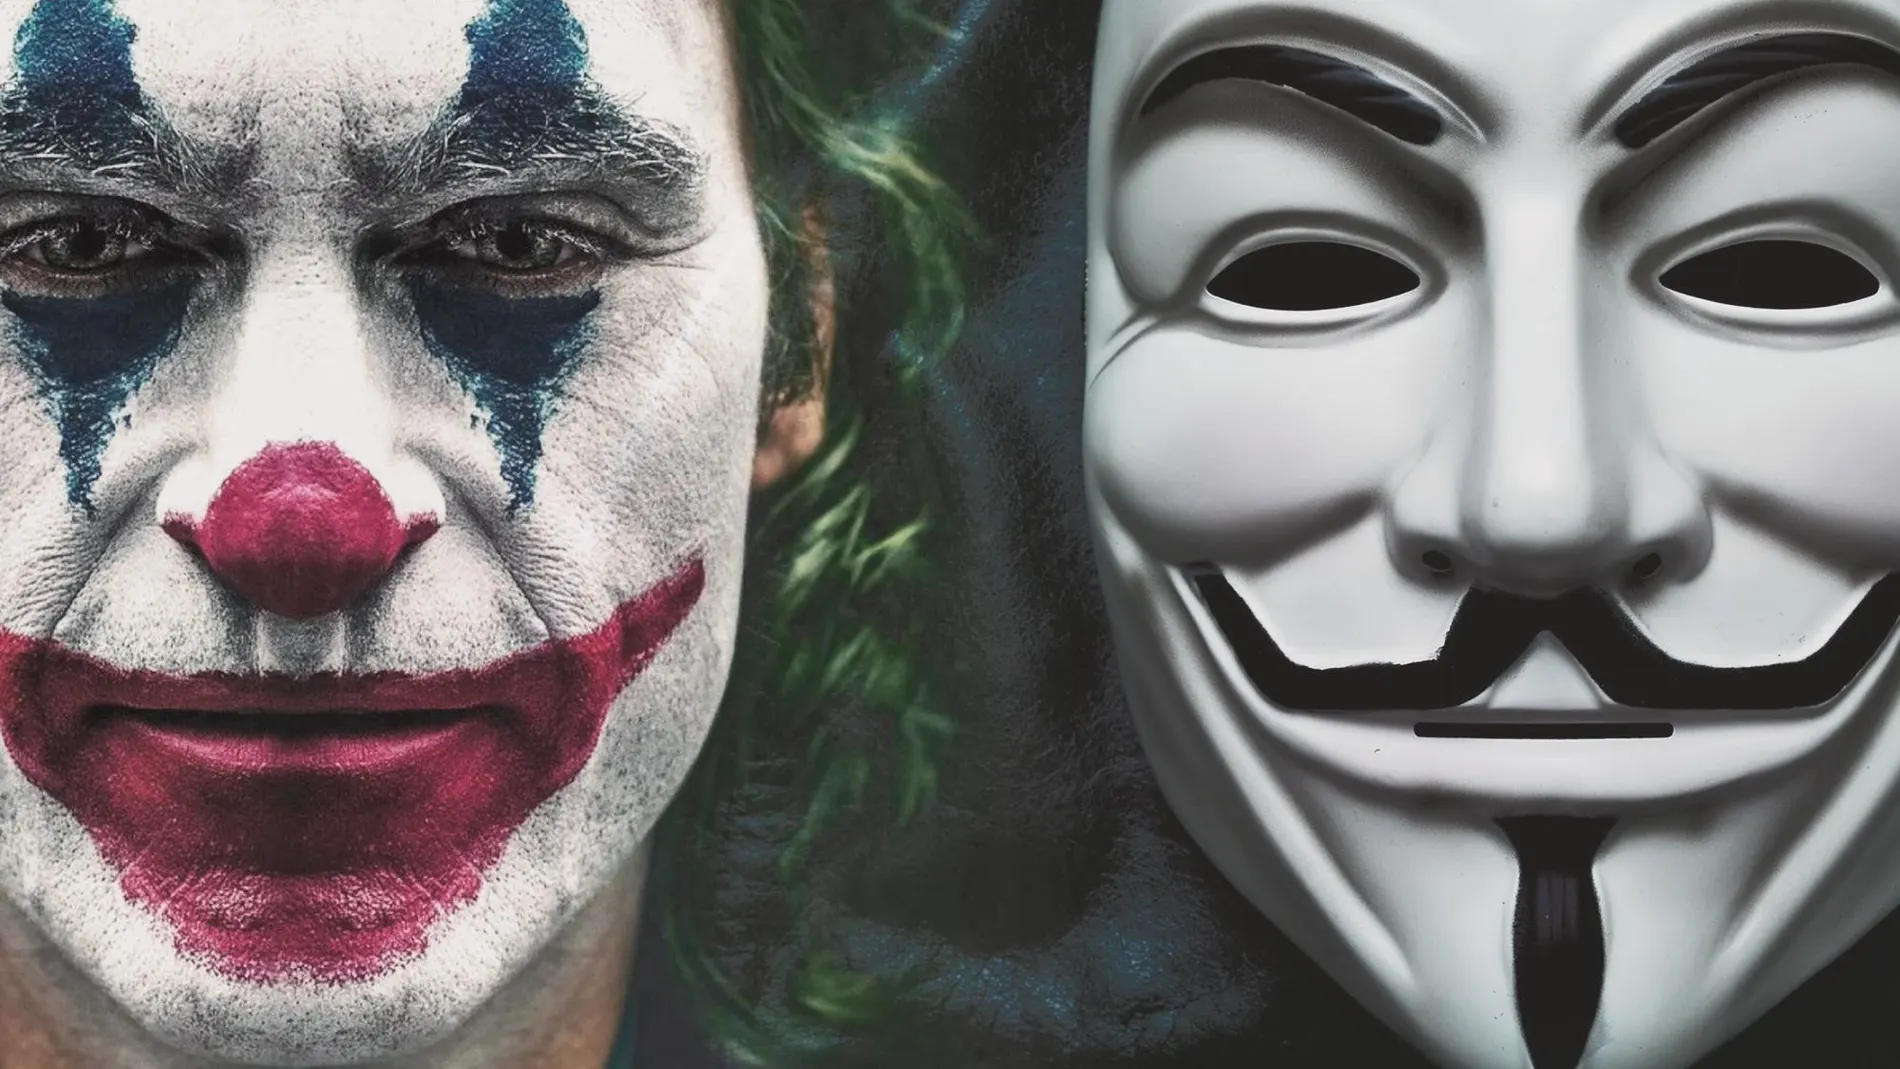 Dos máscaras modernas: la del Joker y la de «V de Vendetta». En ambos casos son una llamada para subvertir el orden social